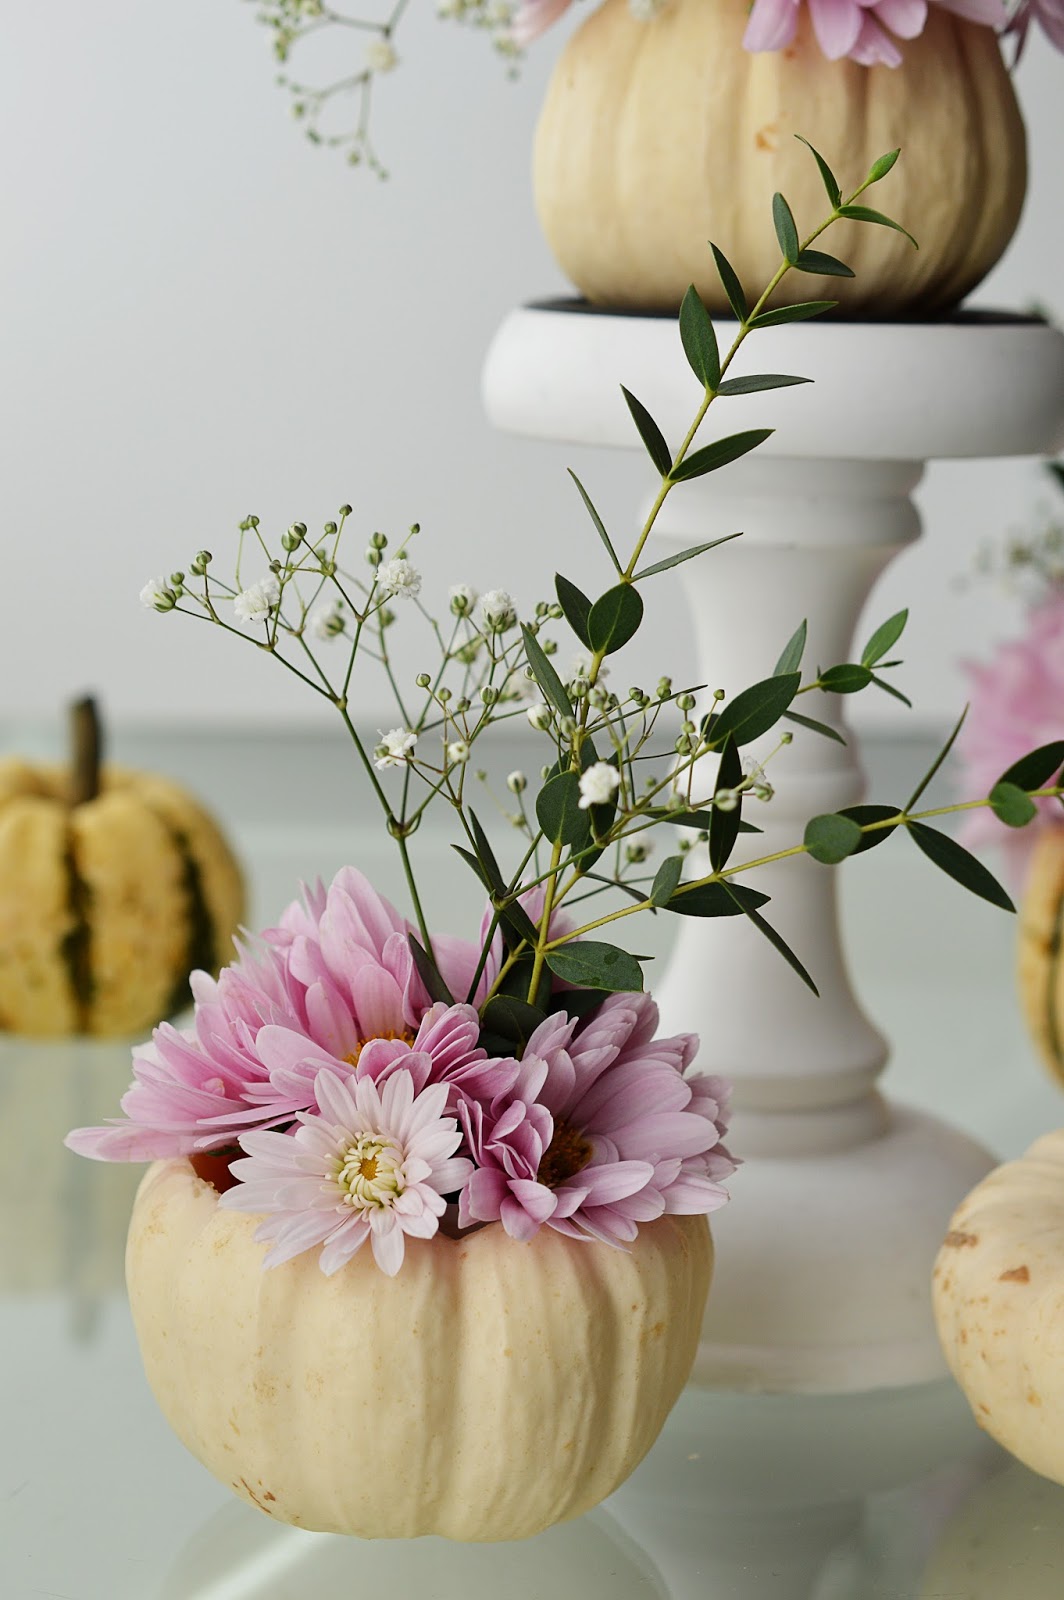 DIY Pumpkin Vases | Motte's Blog